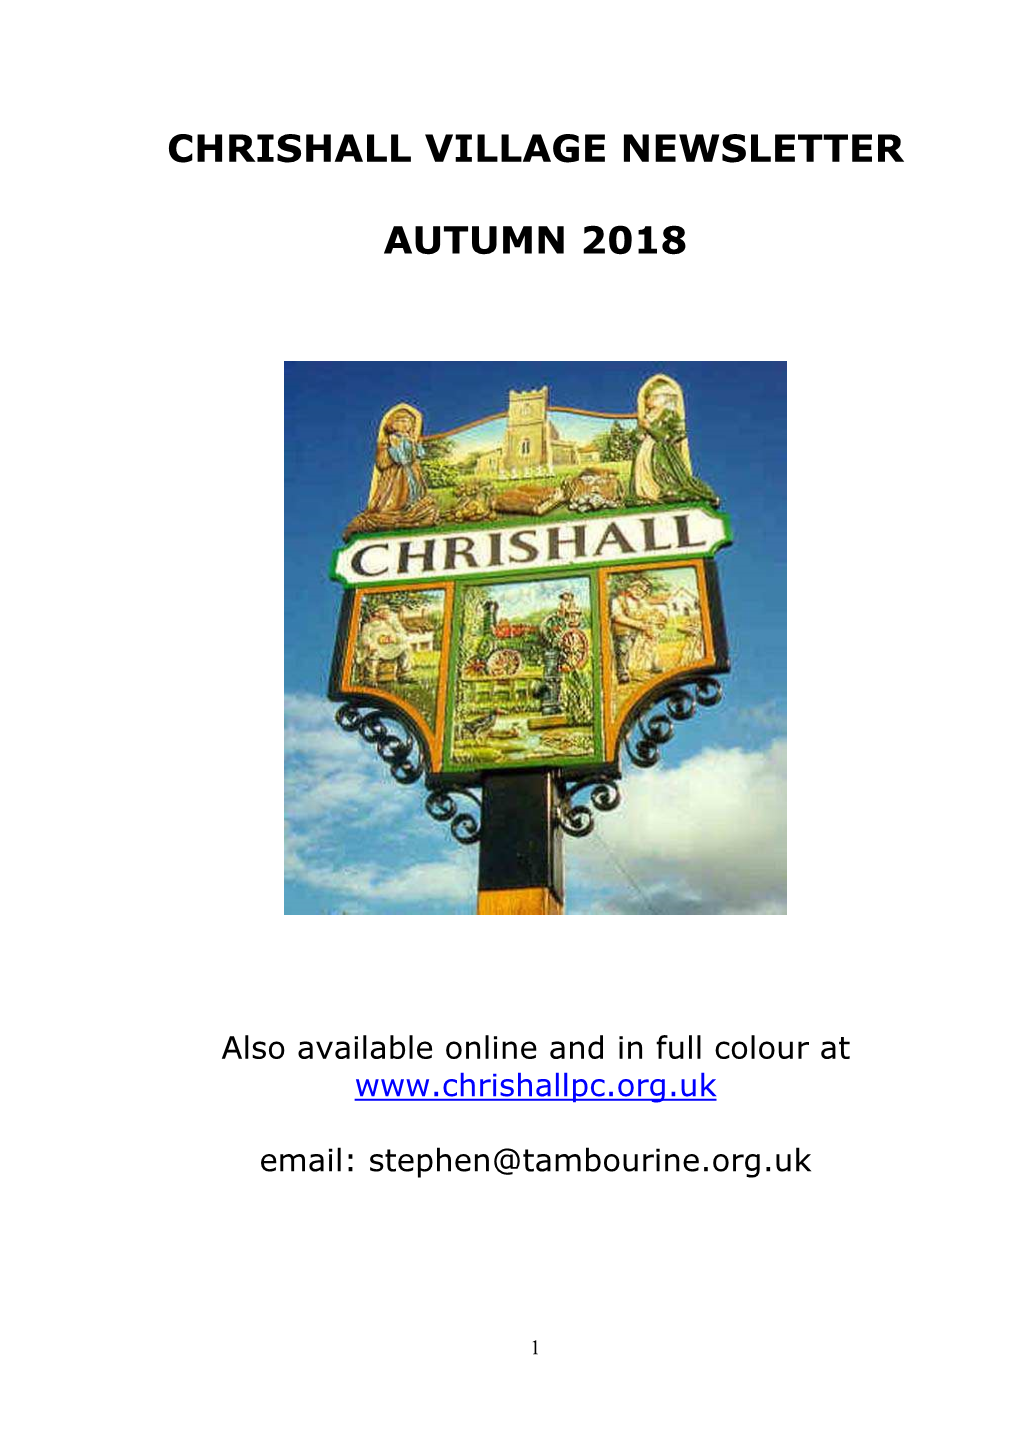 Chrishall Village Newsletter Autumn 2018